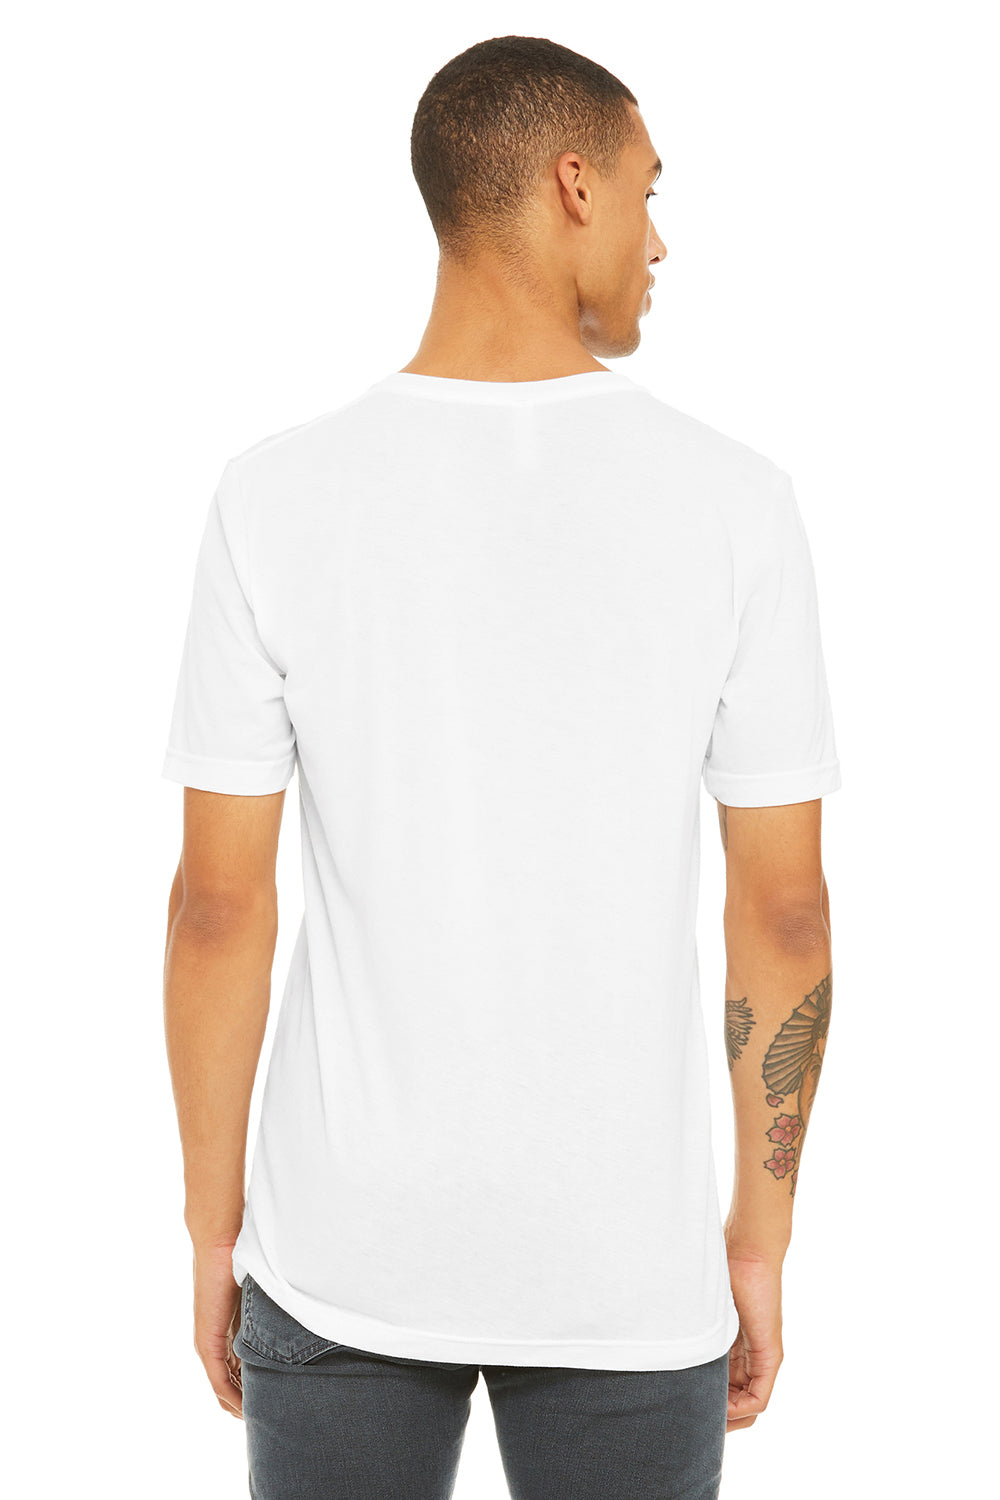 Bella + Canvas BC3415/3415C/3415 Mens Short Sleeve V-Neck T-Shirt Solid White Model Back